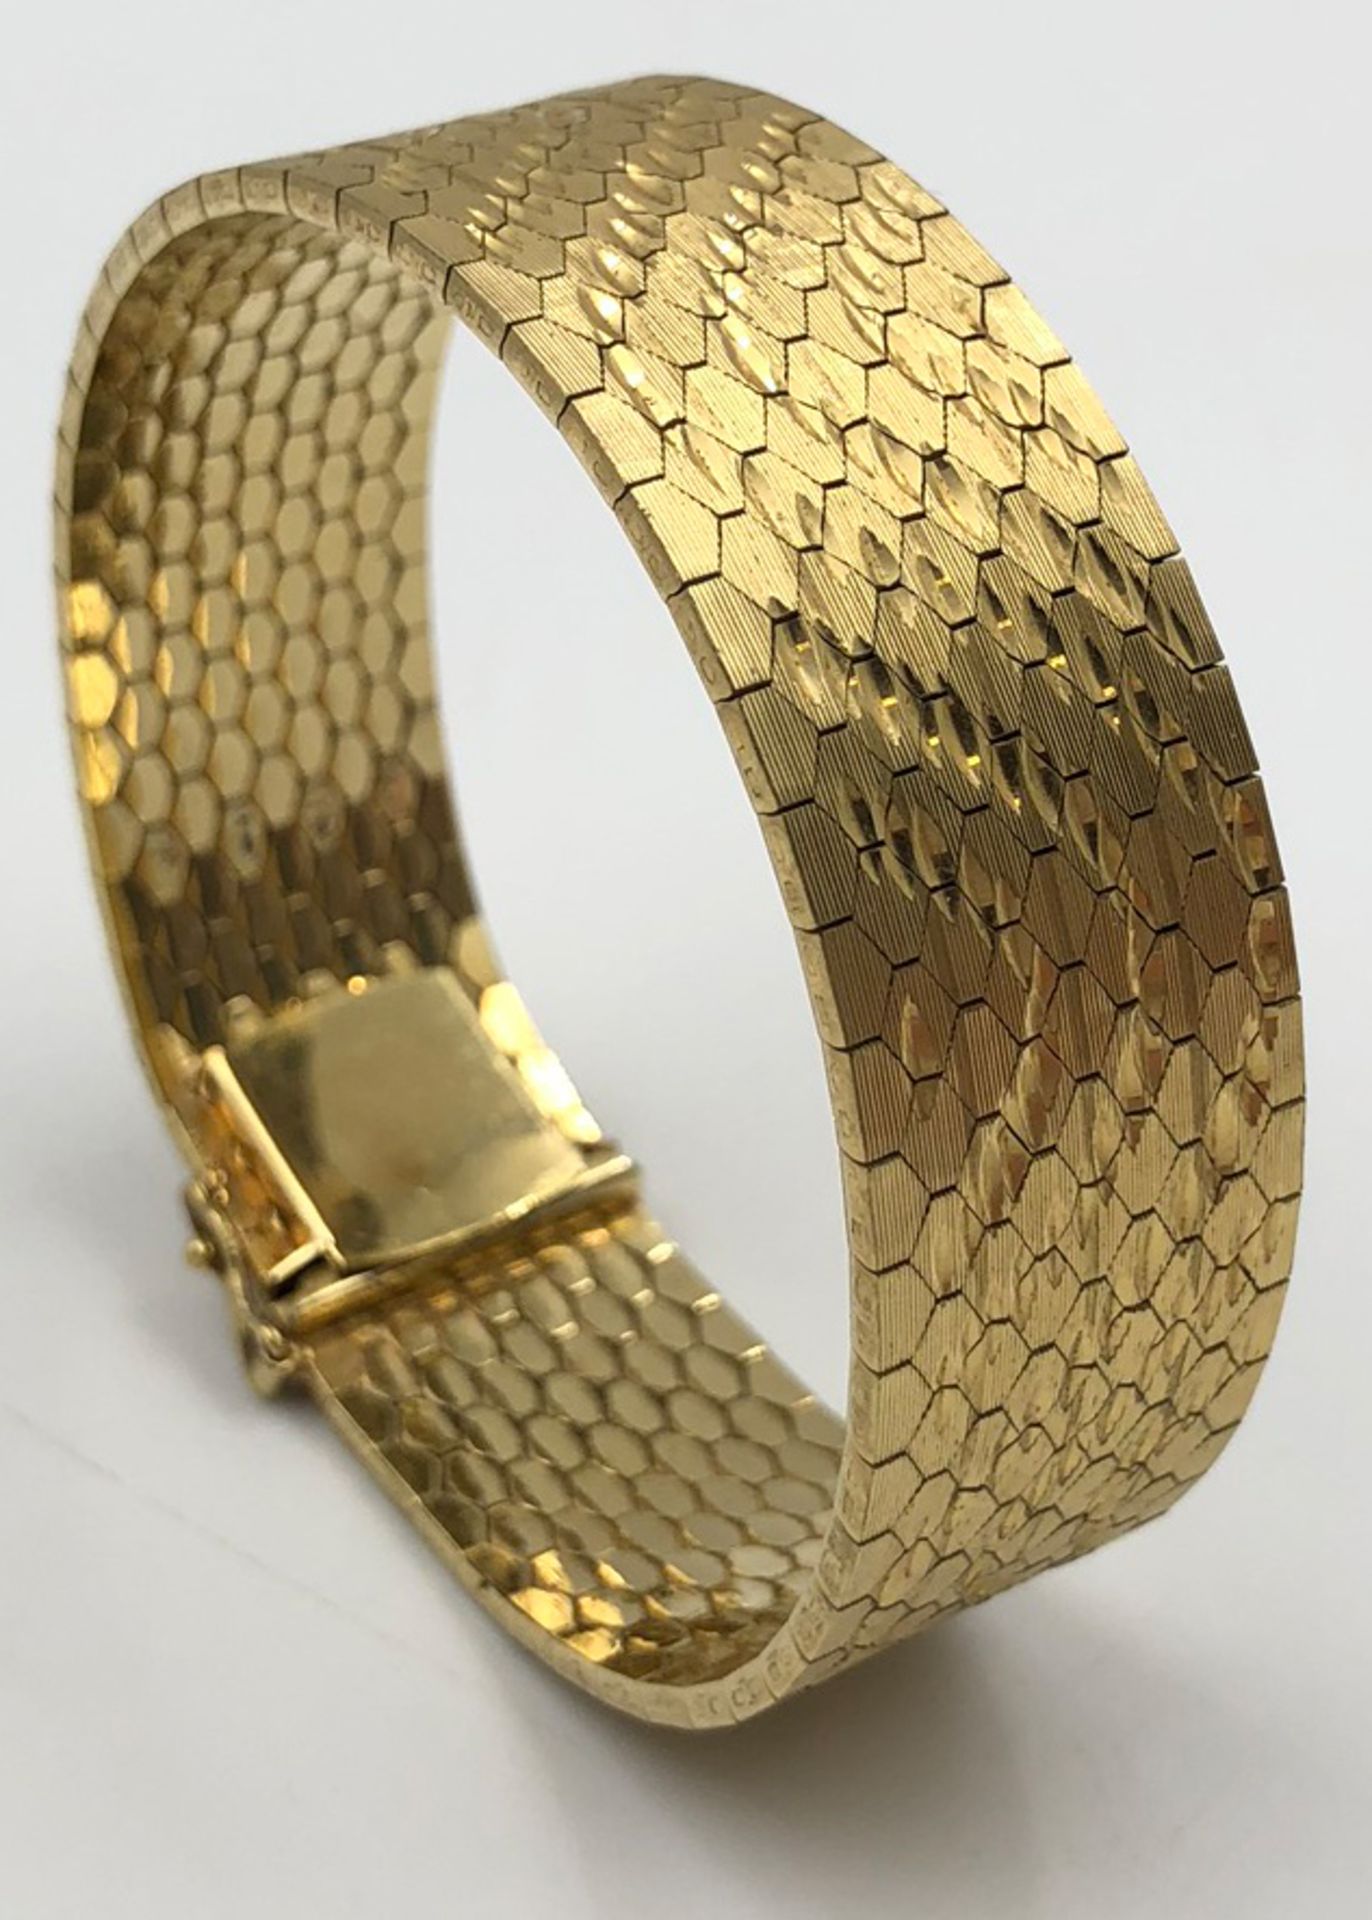 Armband. Vergoldet.38,9 Gramm. 18,5 cm lang.Bracelet. Gold.38.9 grams. 18.5 cm long. Probably 14